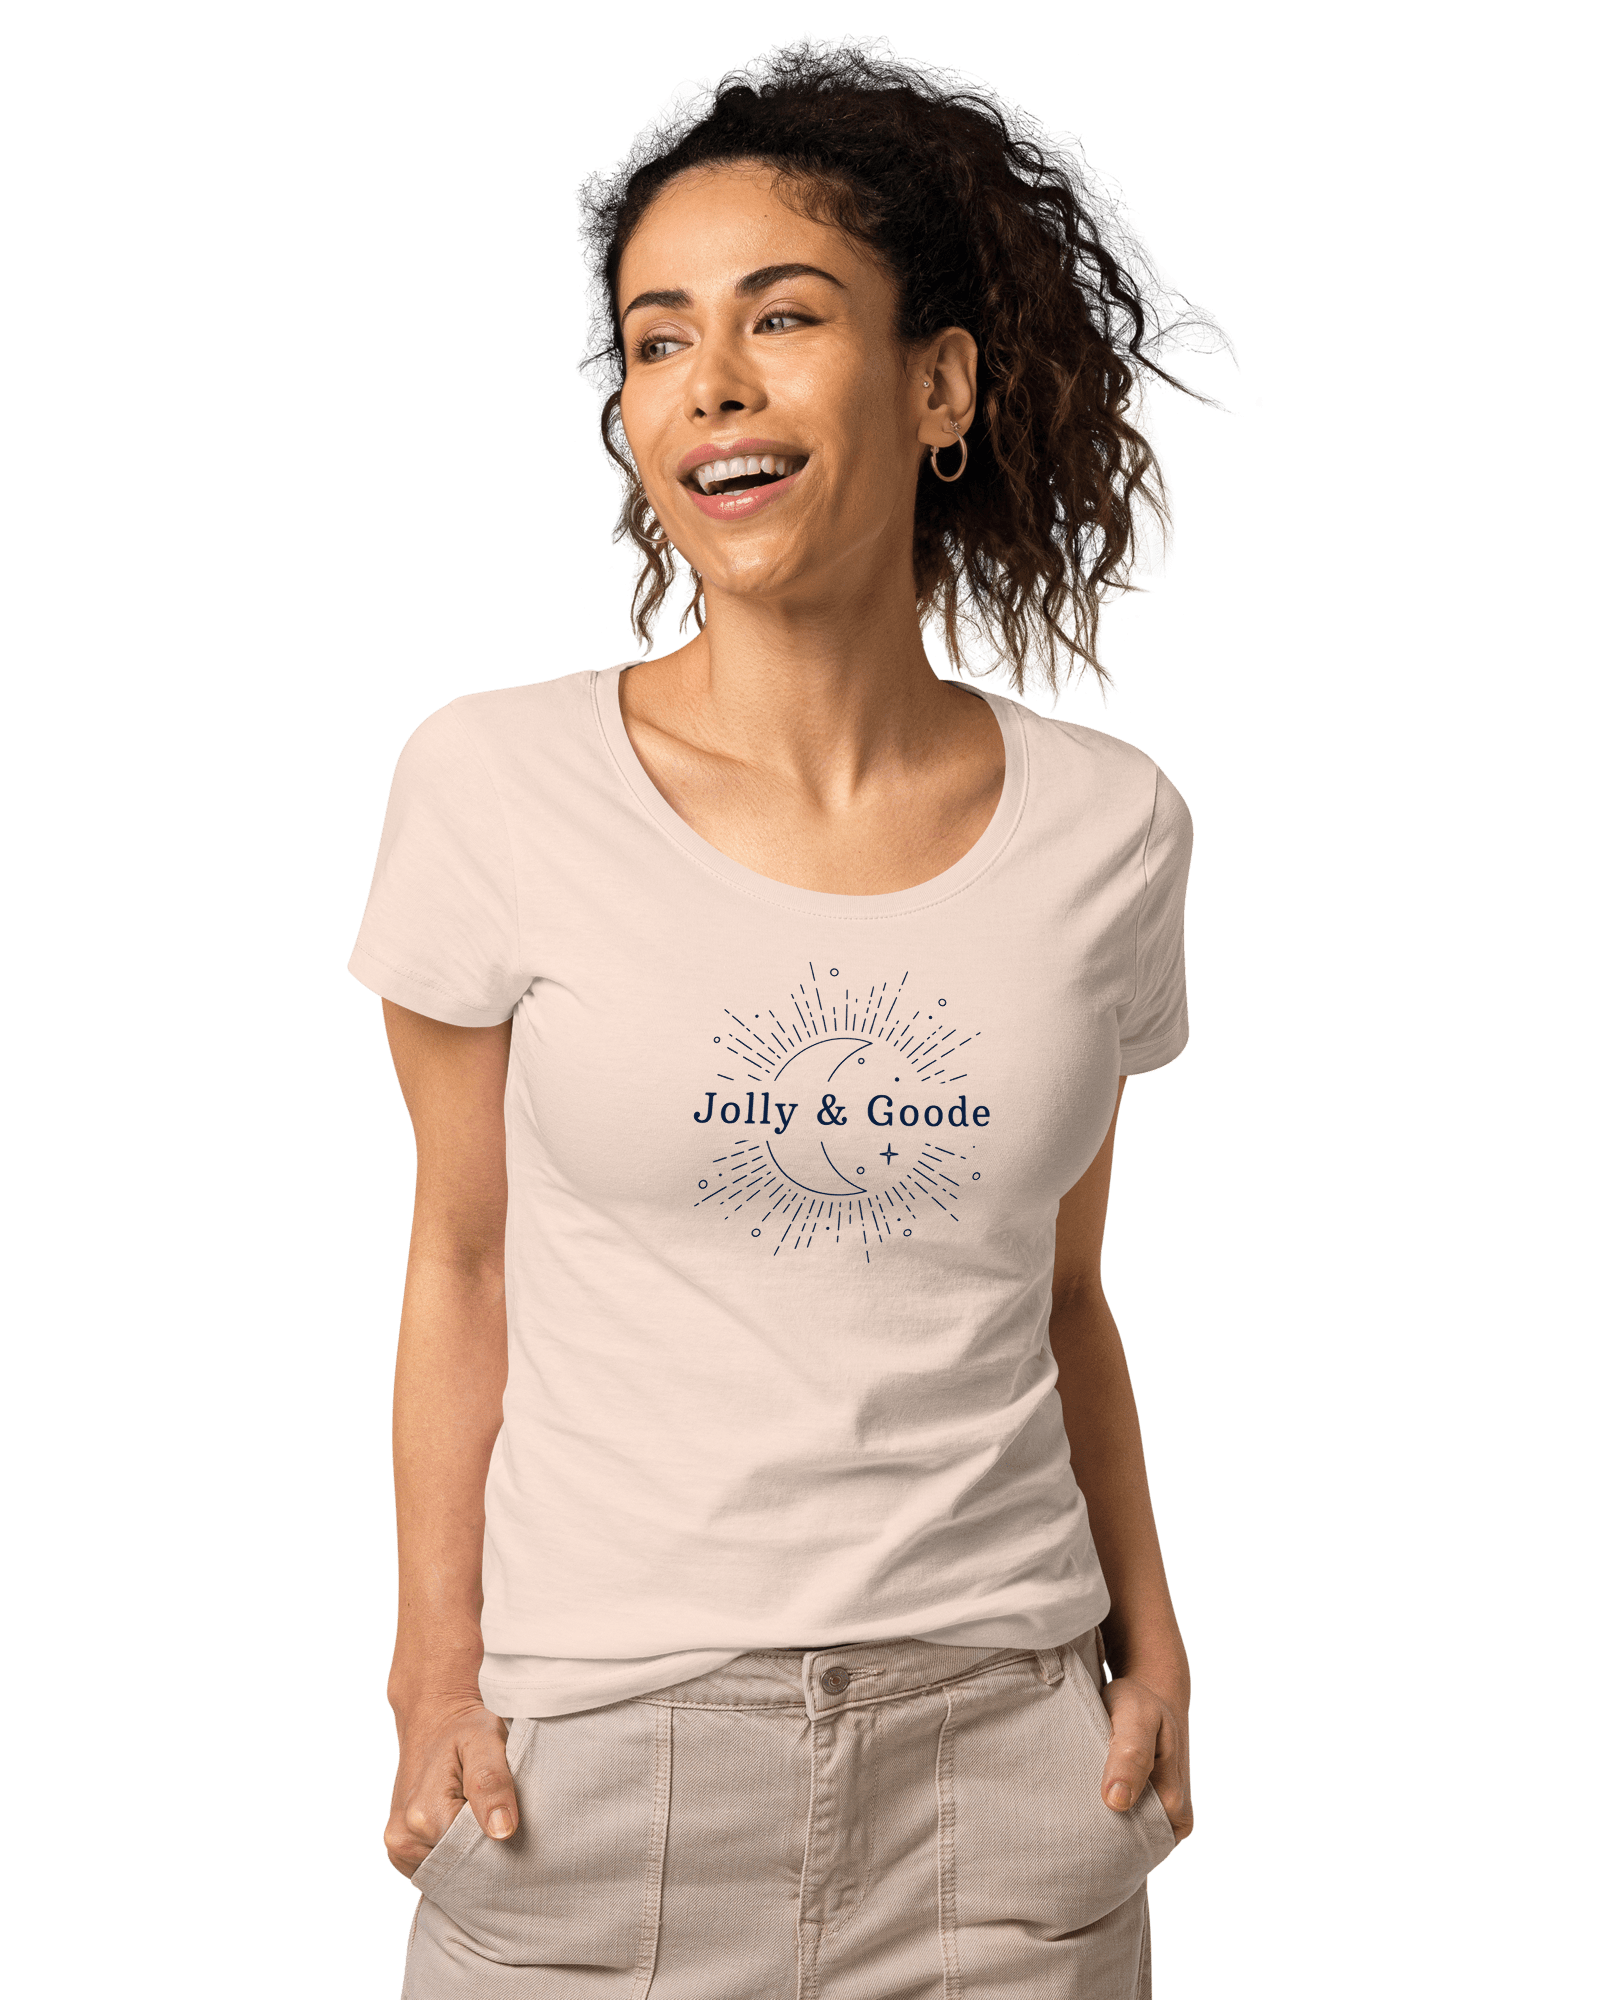 Jolly & Goode | Women’s Organic T-shirt Shirts & Tops Jolly & Goode